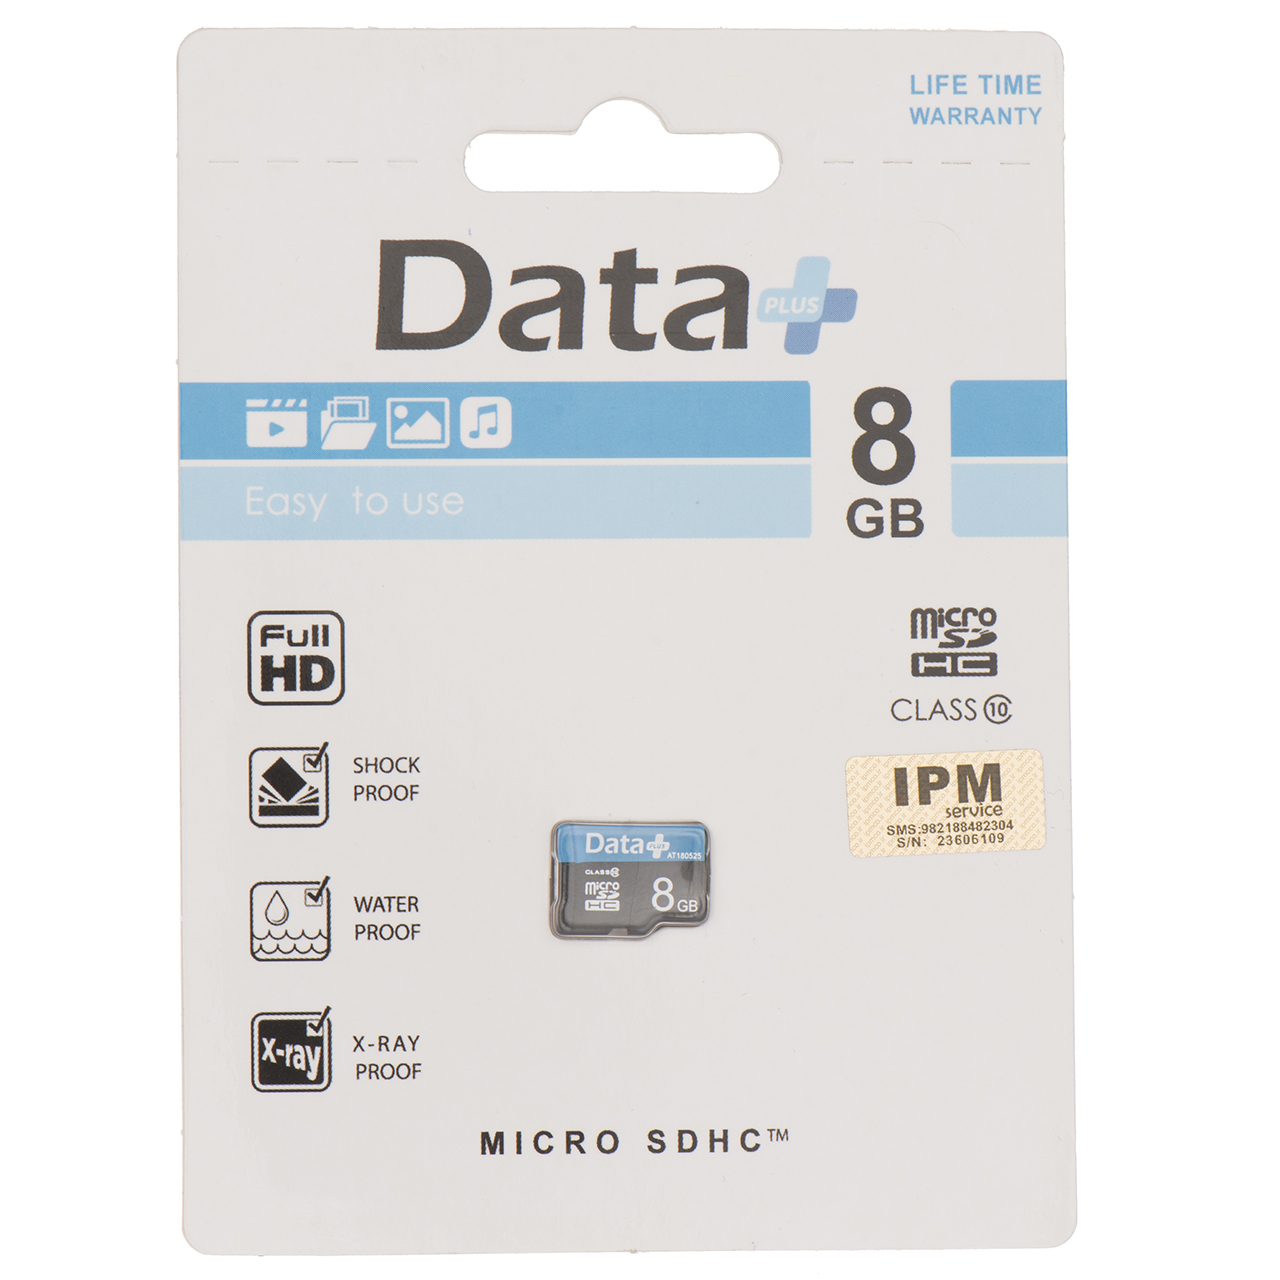 کارت حافظه microSDHC دیتاپلاس مدل IPM کلاس 10 ظرفیت 8 گیگابایت